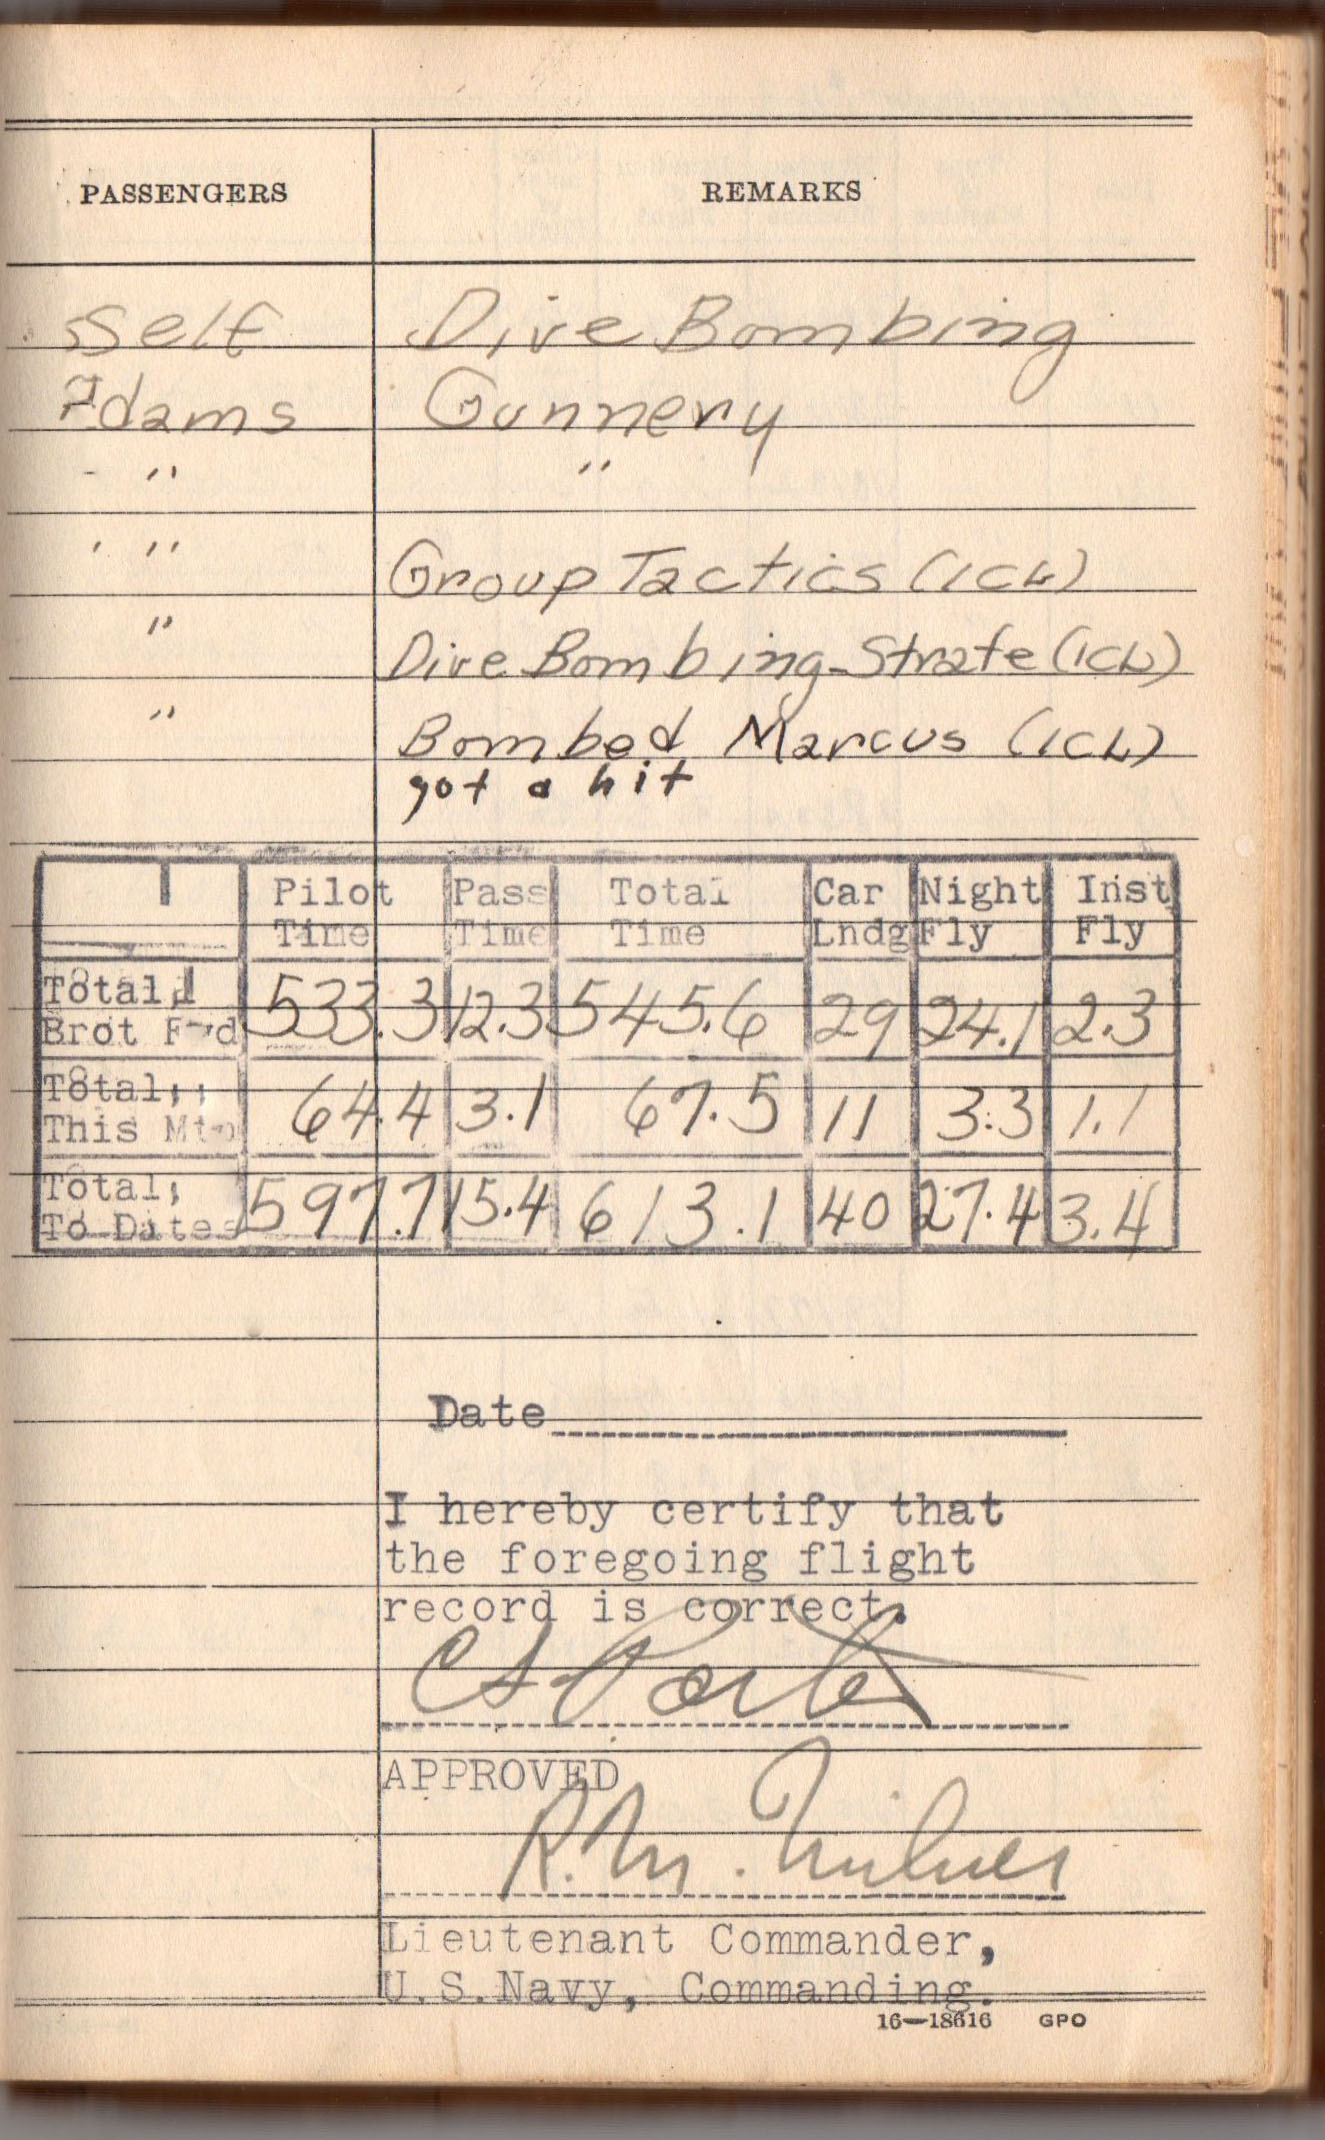 PORTERS Half August 1943 Combat Report